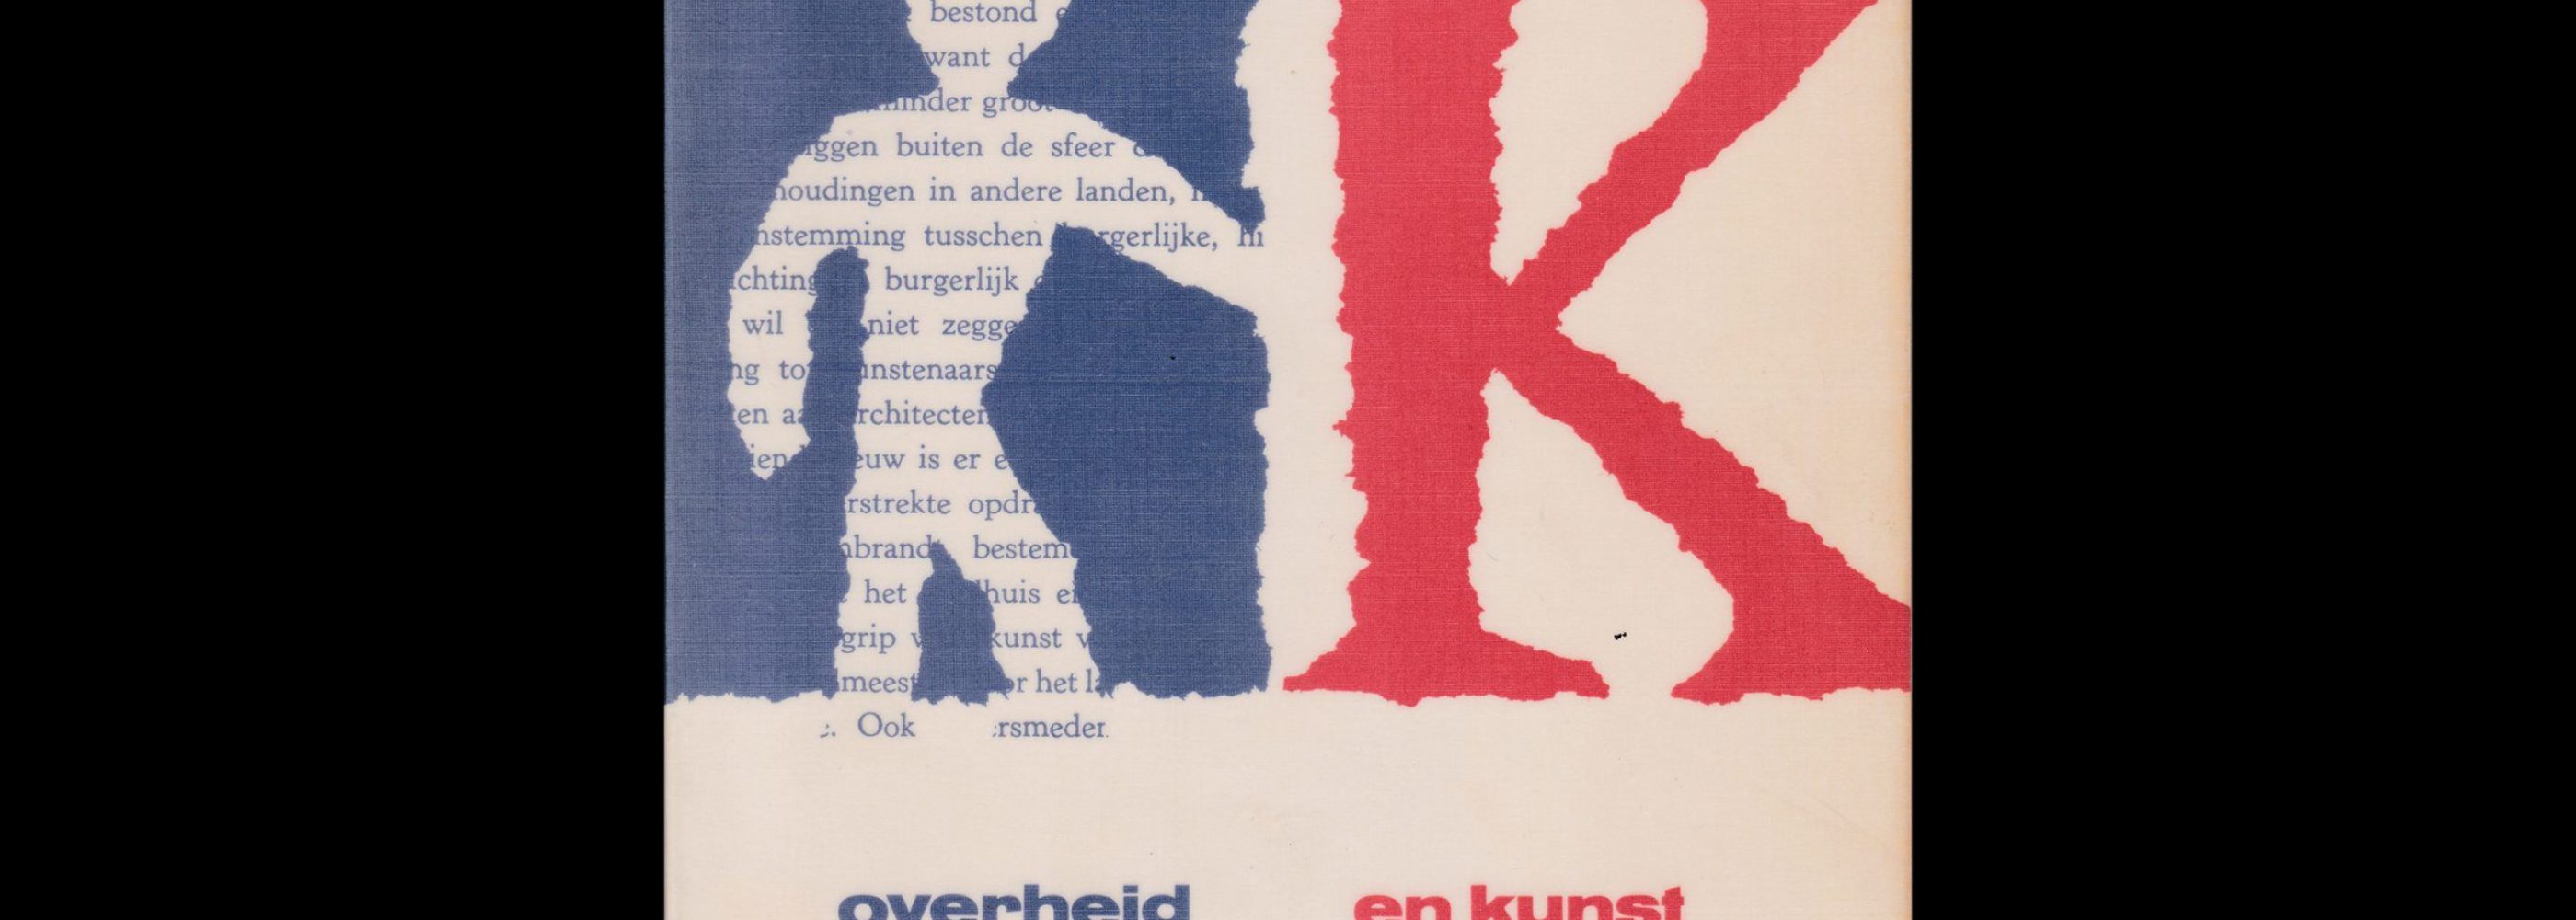 Overheid en kunst in Nederland, 1967 designed by Willem Sandberg